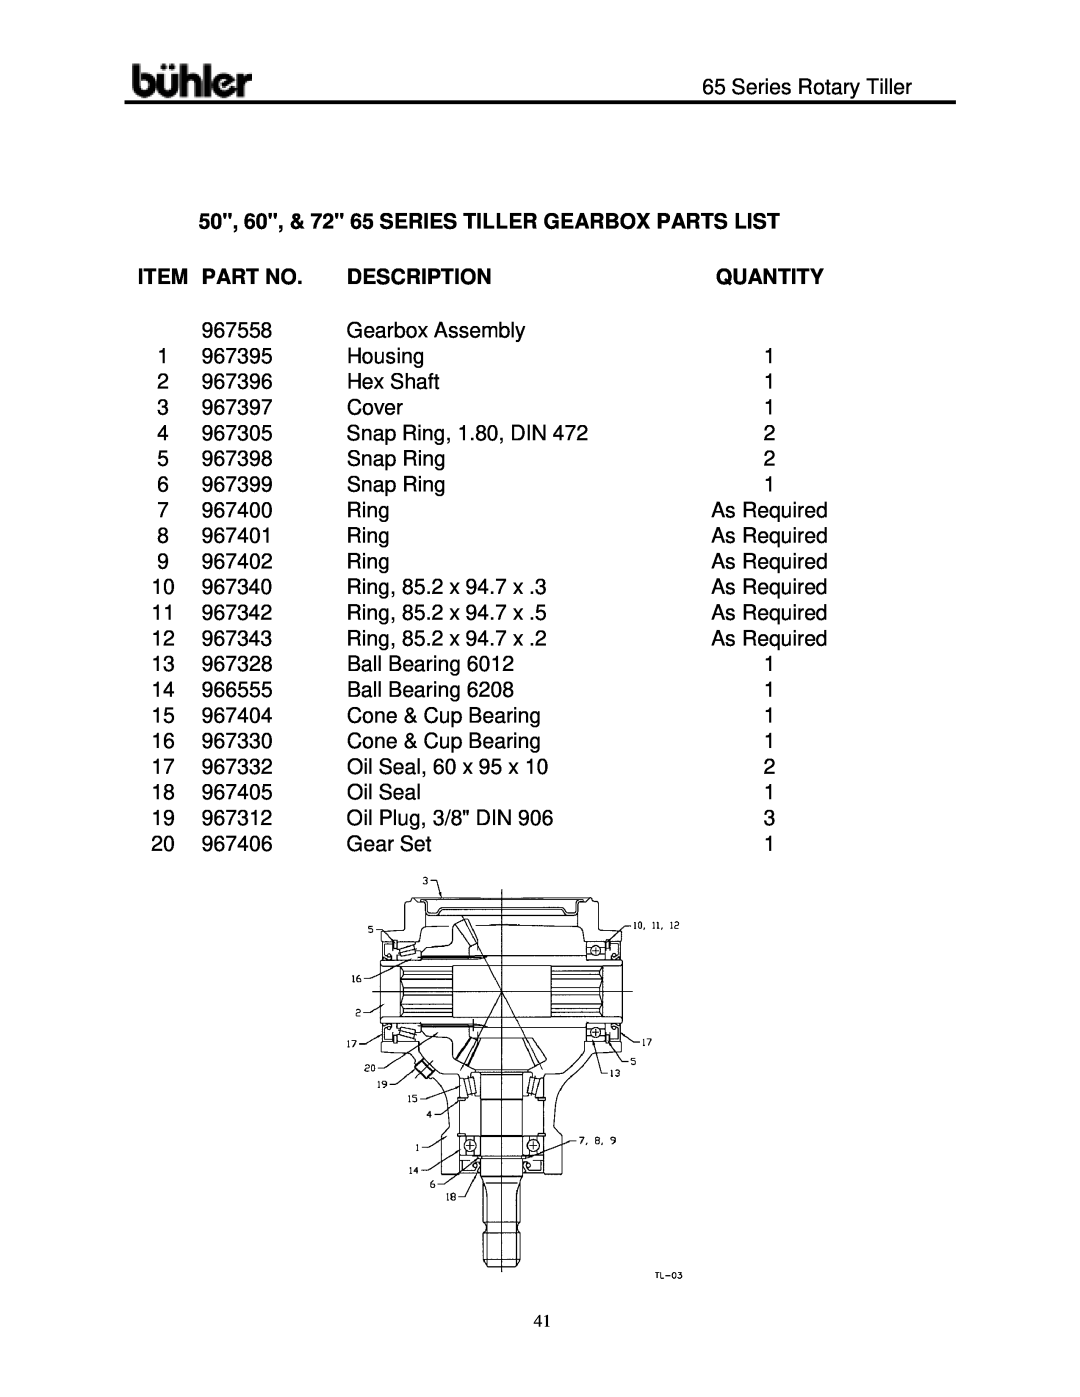 Buhler 65 Series warranty 50, 60, & 72 65 SERIES TILLER GEARBOX PARTS LIST, Item Part No, Quantity, Description 